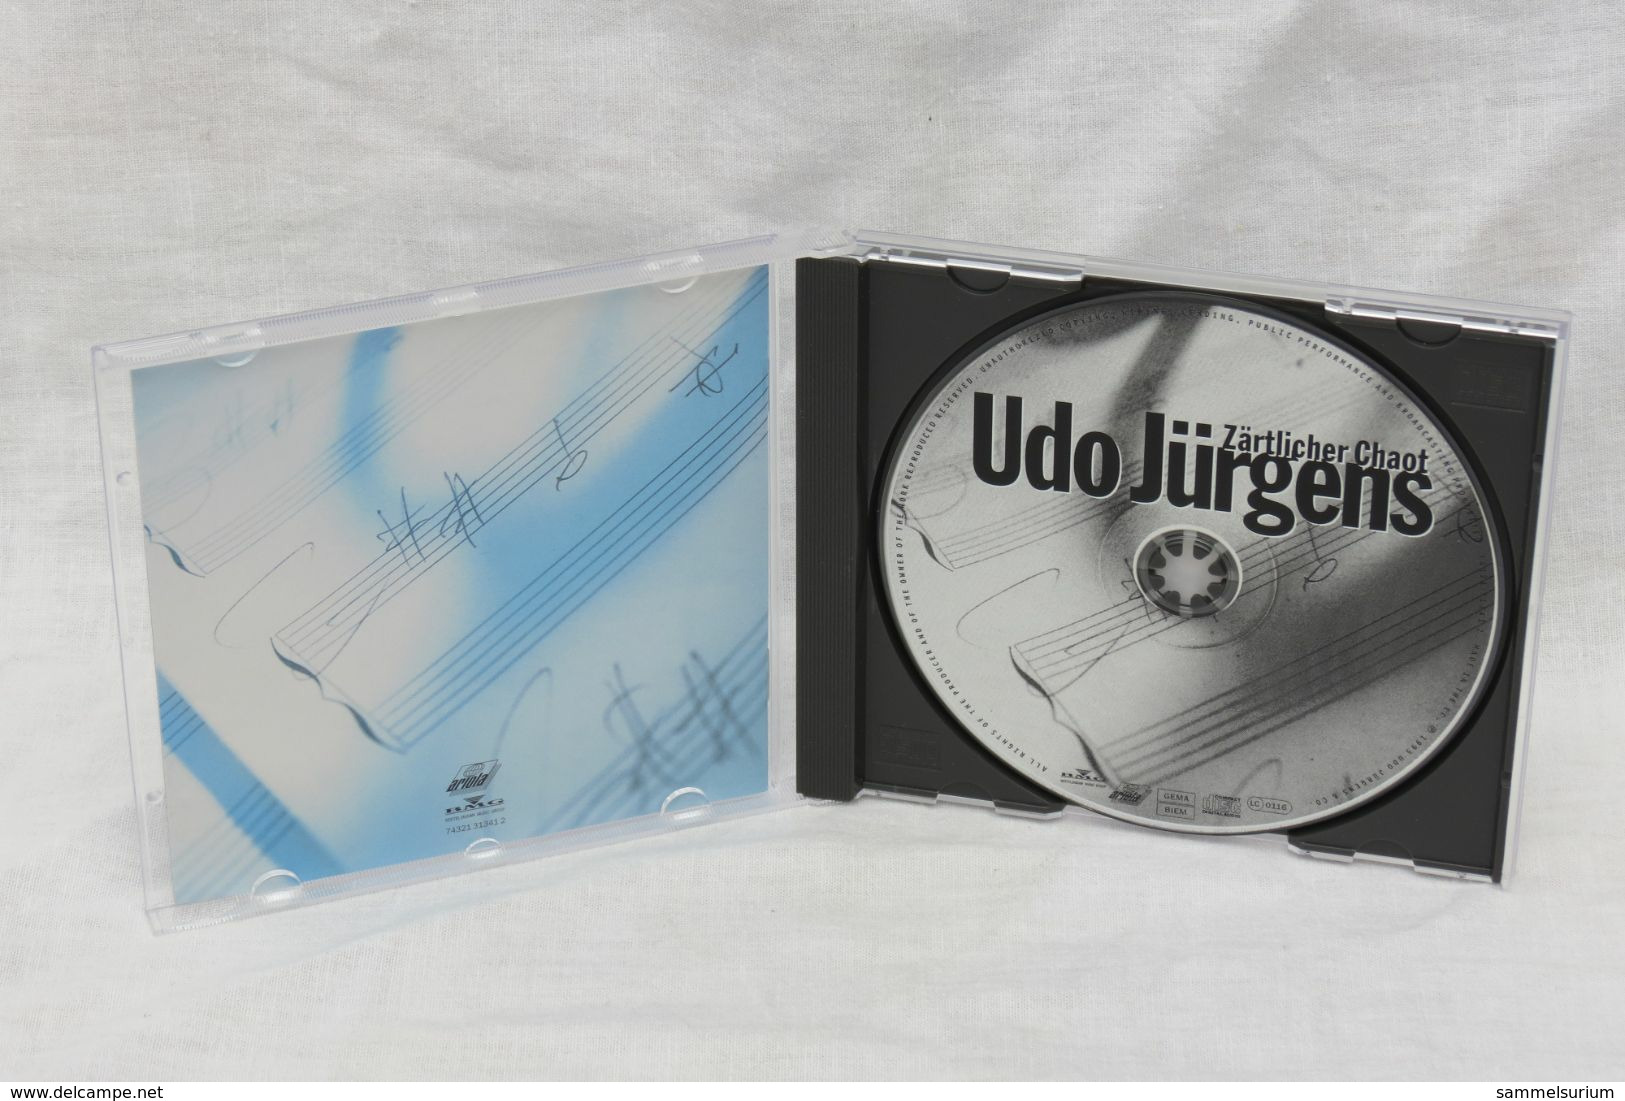 CD "Udo Jürgens" Zärtlicher Chaot - Autres - Musique Allemande